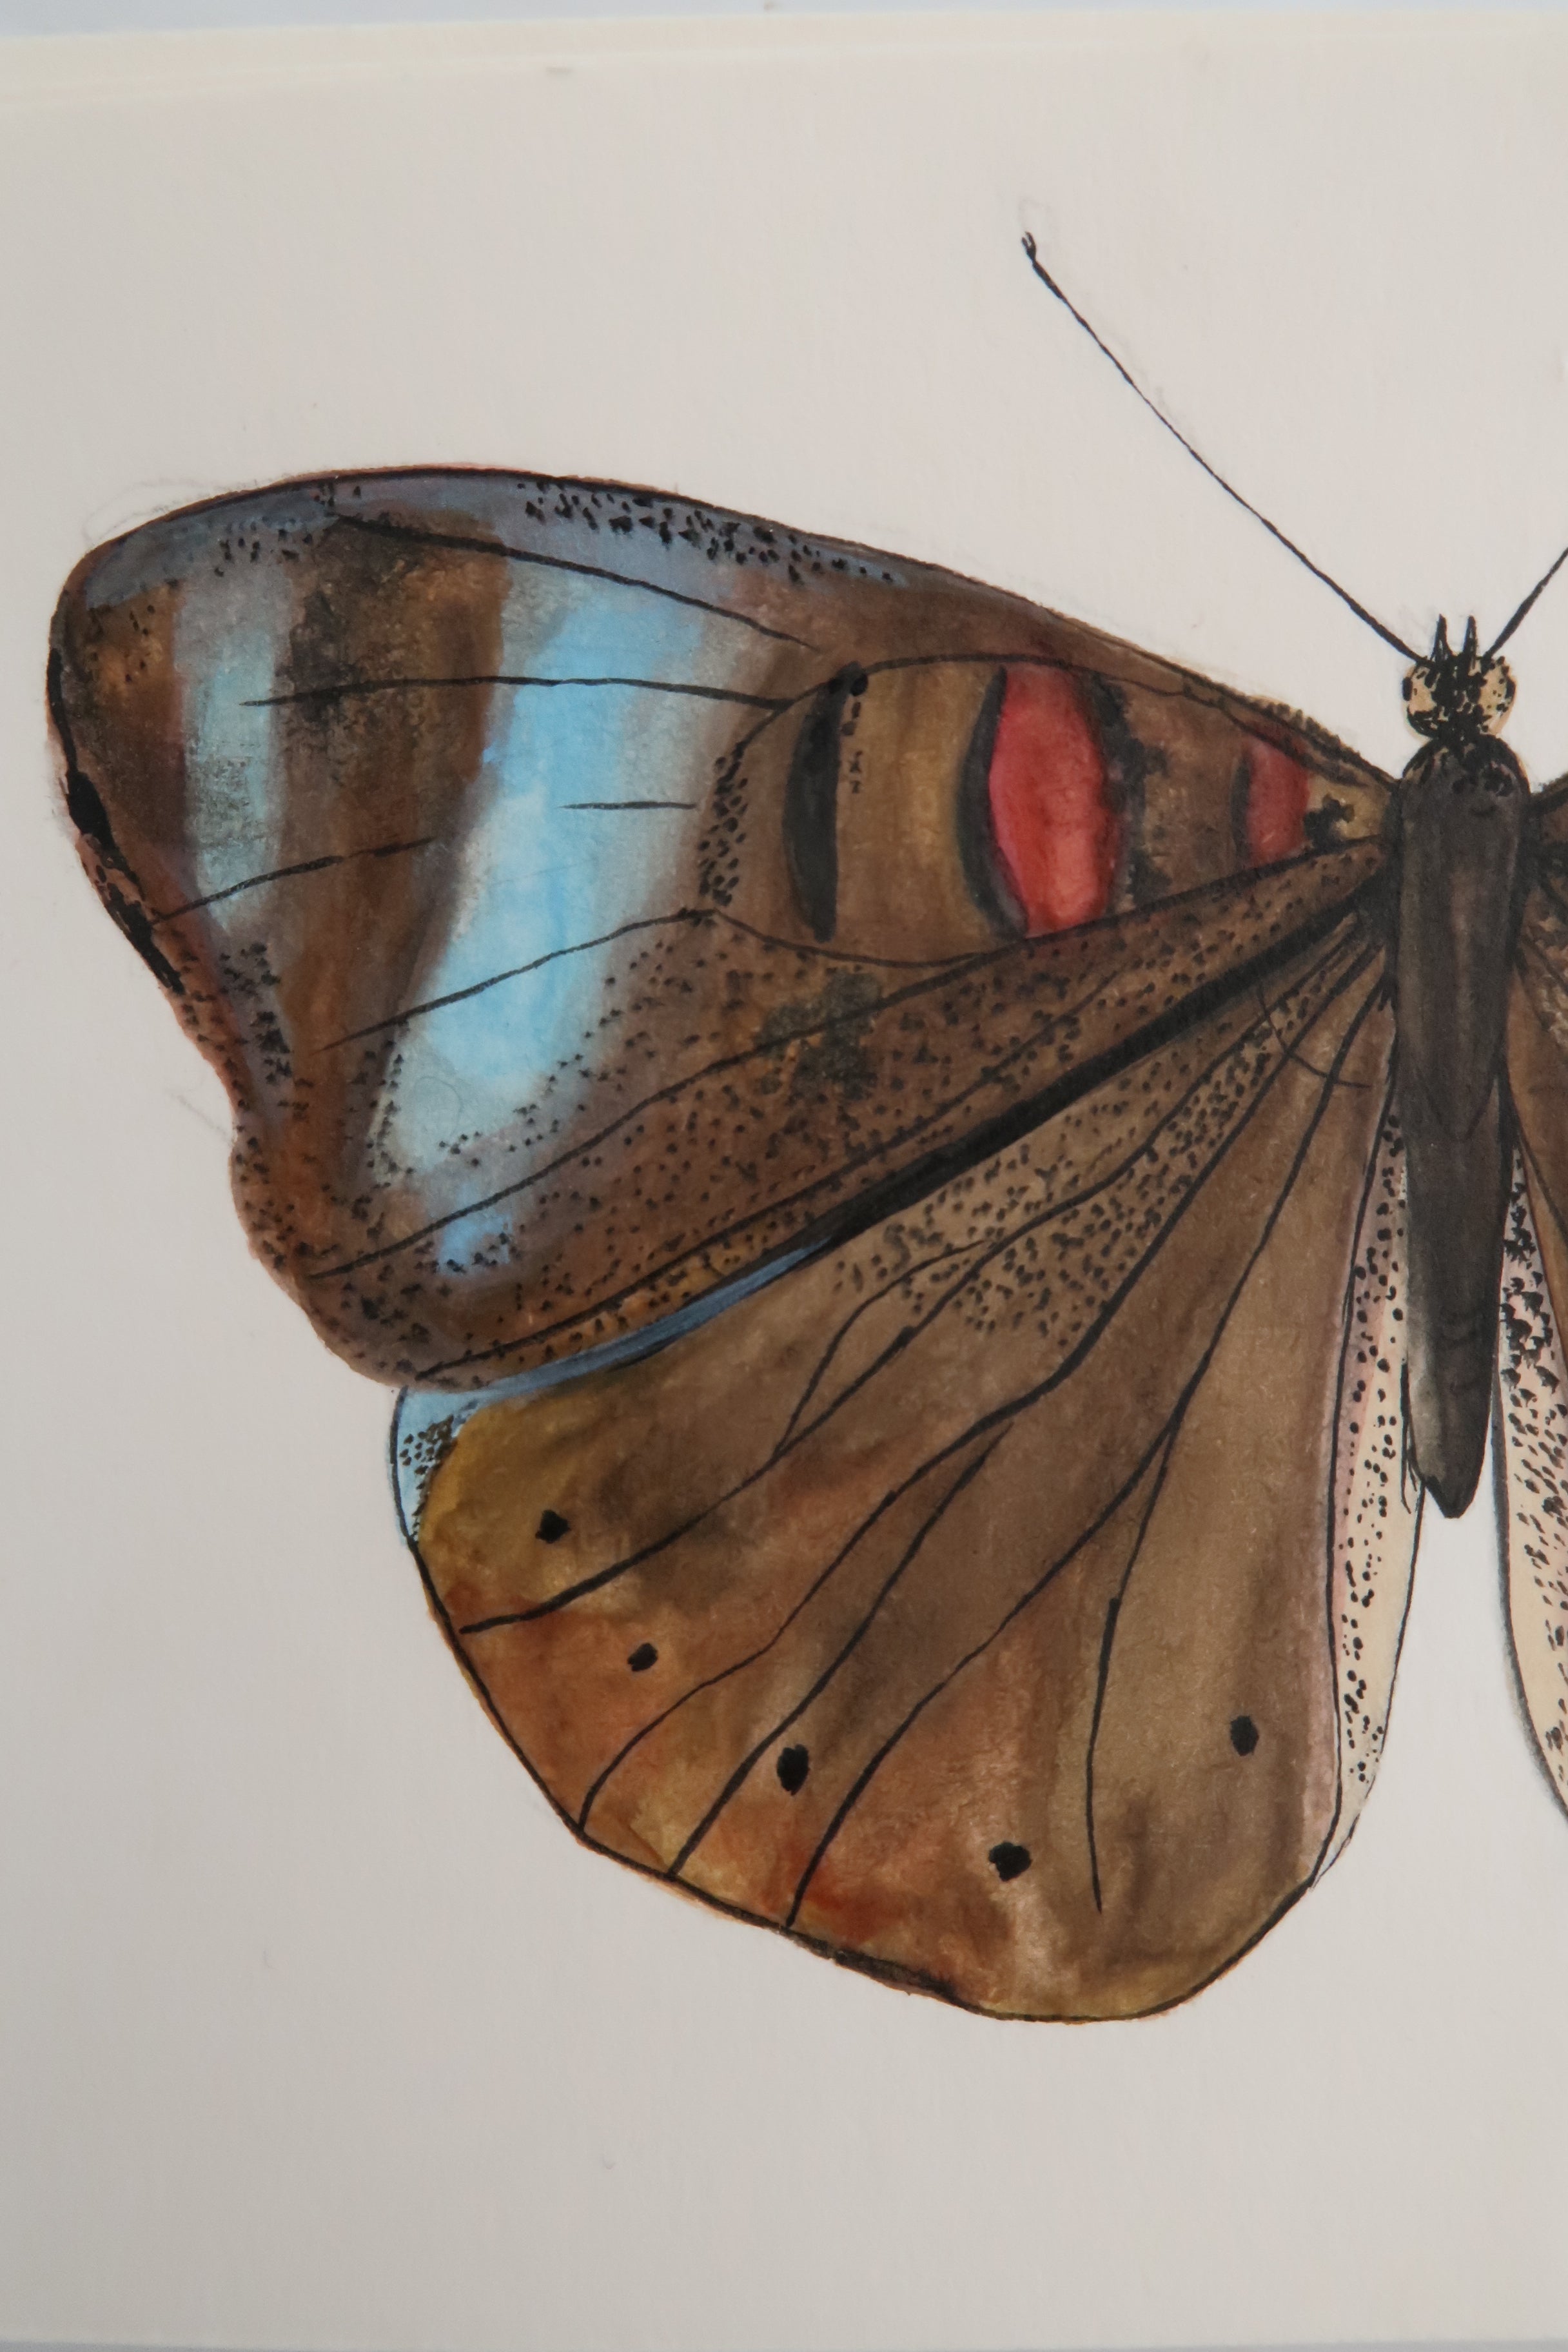 Papillon brun et tâches bleues